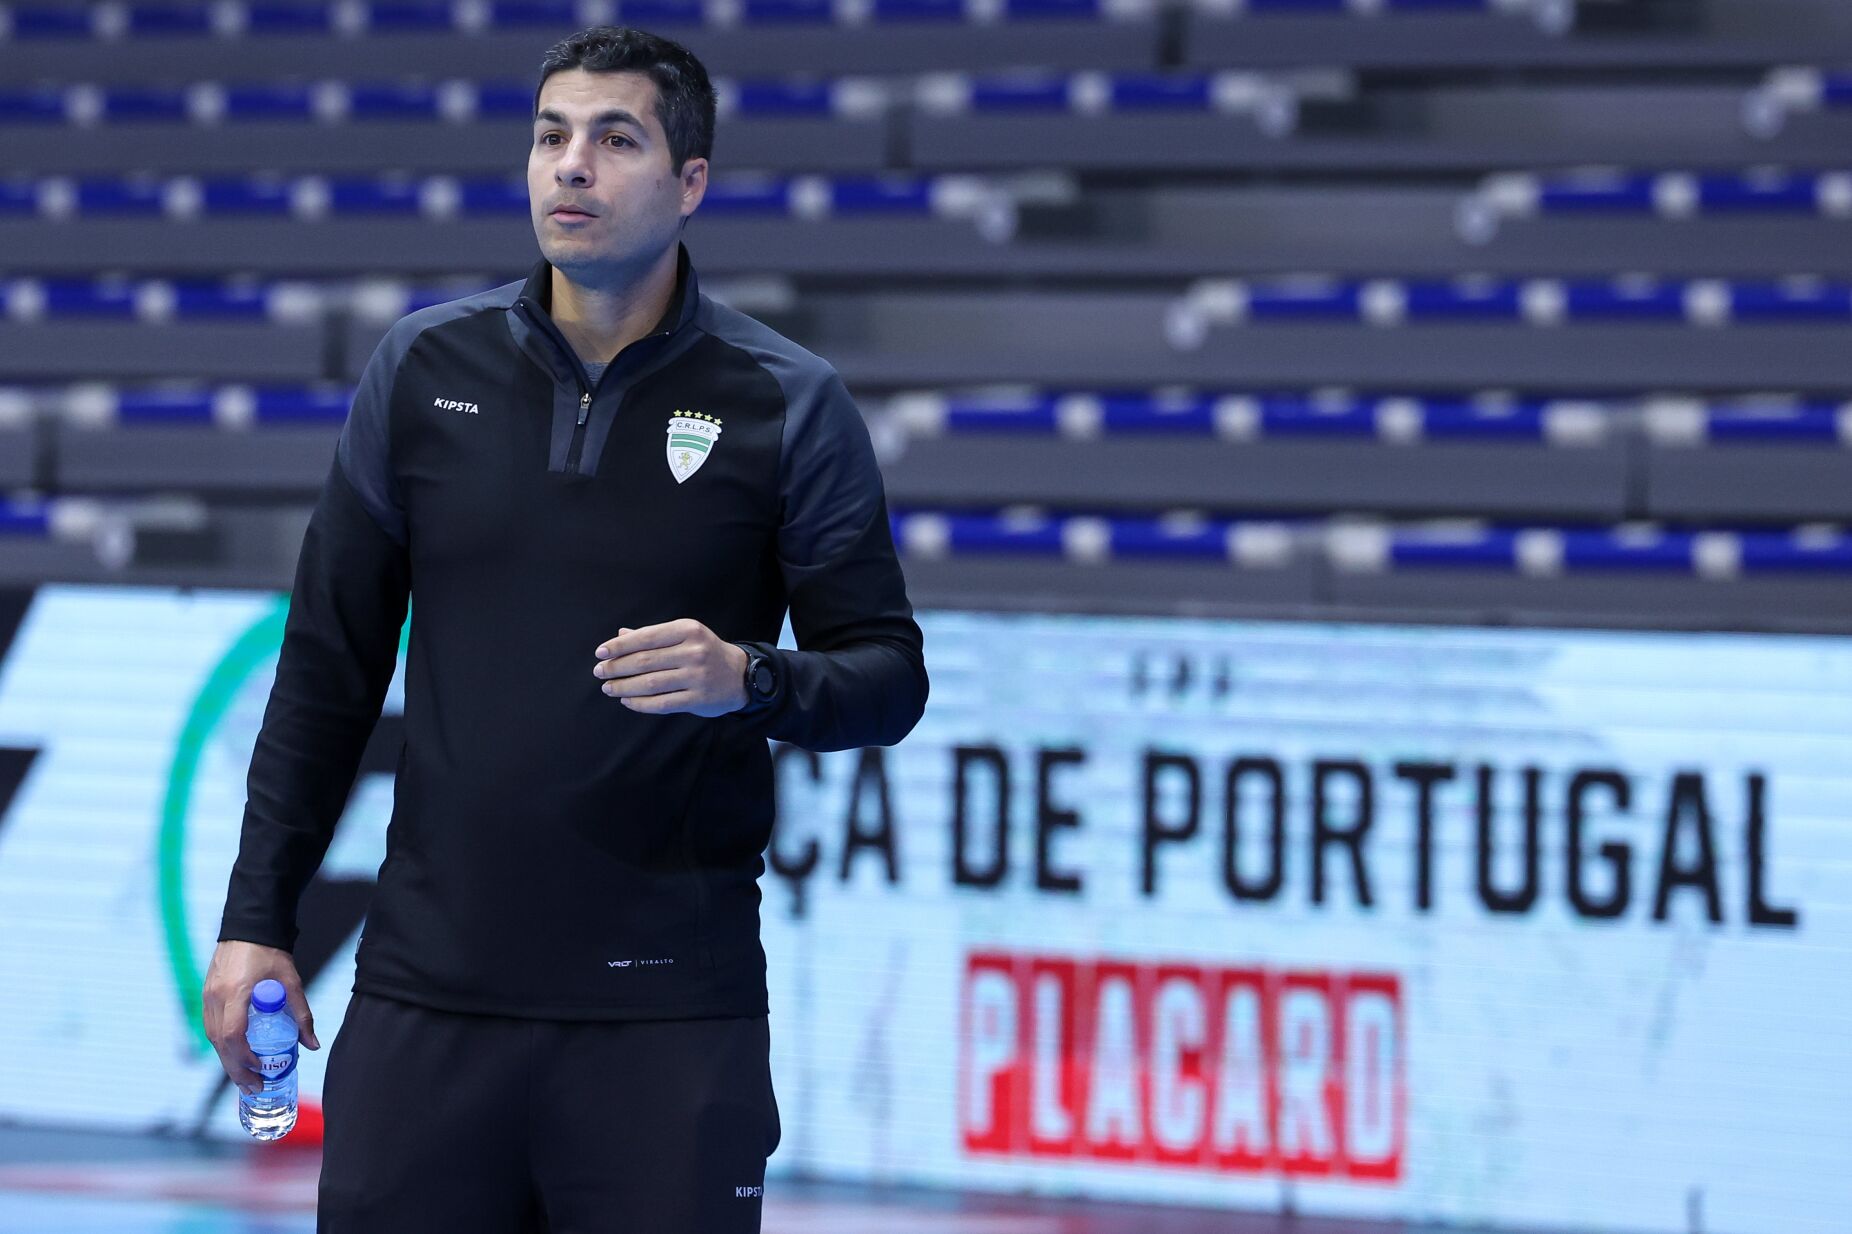 Treinador do Leões de Porto Salvo: "O Sporting demonstrou exatamente para o que vem..."